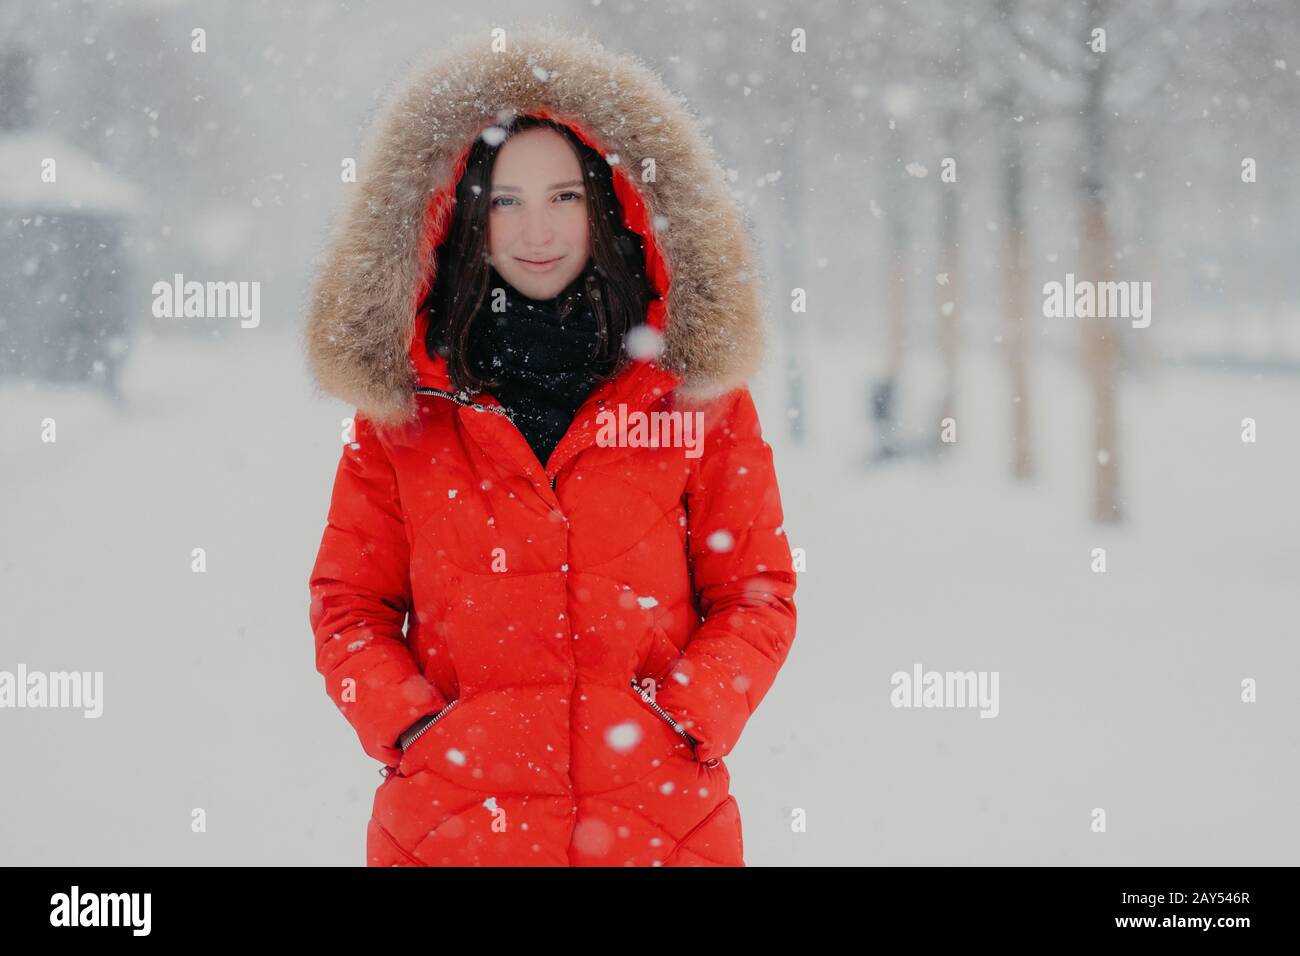 Gut aussehende junge Frau hat einen ansprechenden Look, trägt eine warme rote Jacke, hält die Hände in den Taschen, schlendern im Freien während der Winterzeit und Schneefall, Posen Stockfoto